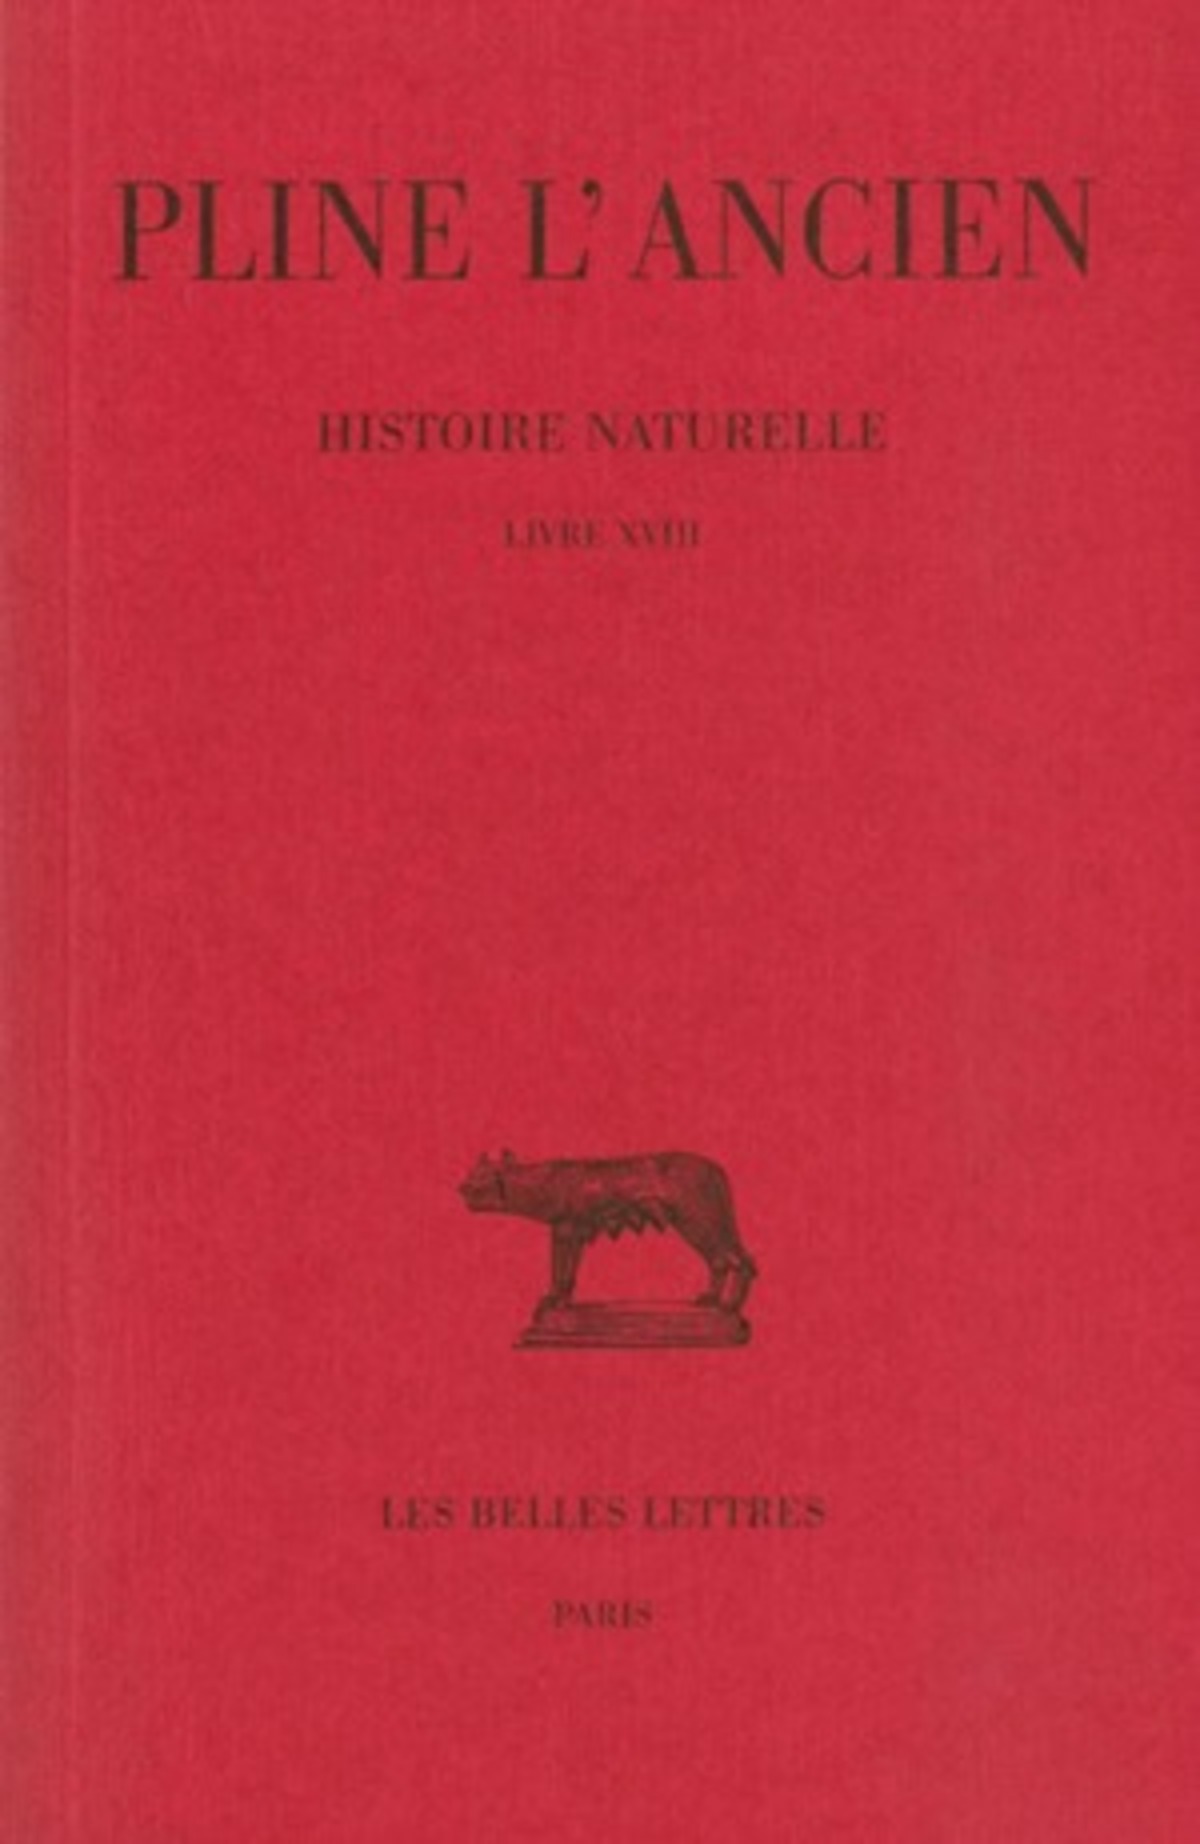 Histoire naturelle. Livre XVIII